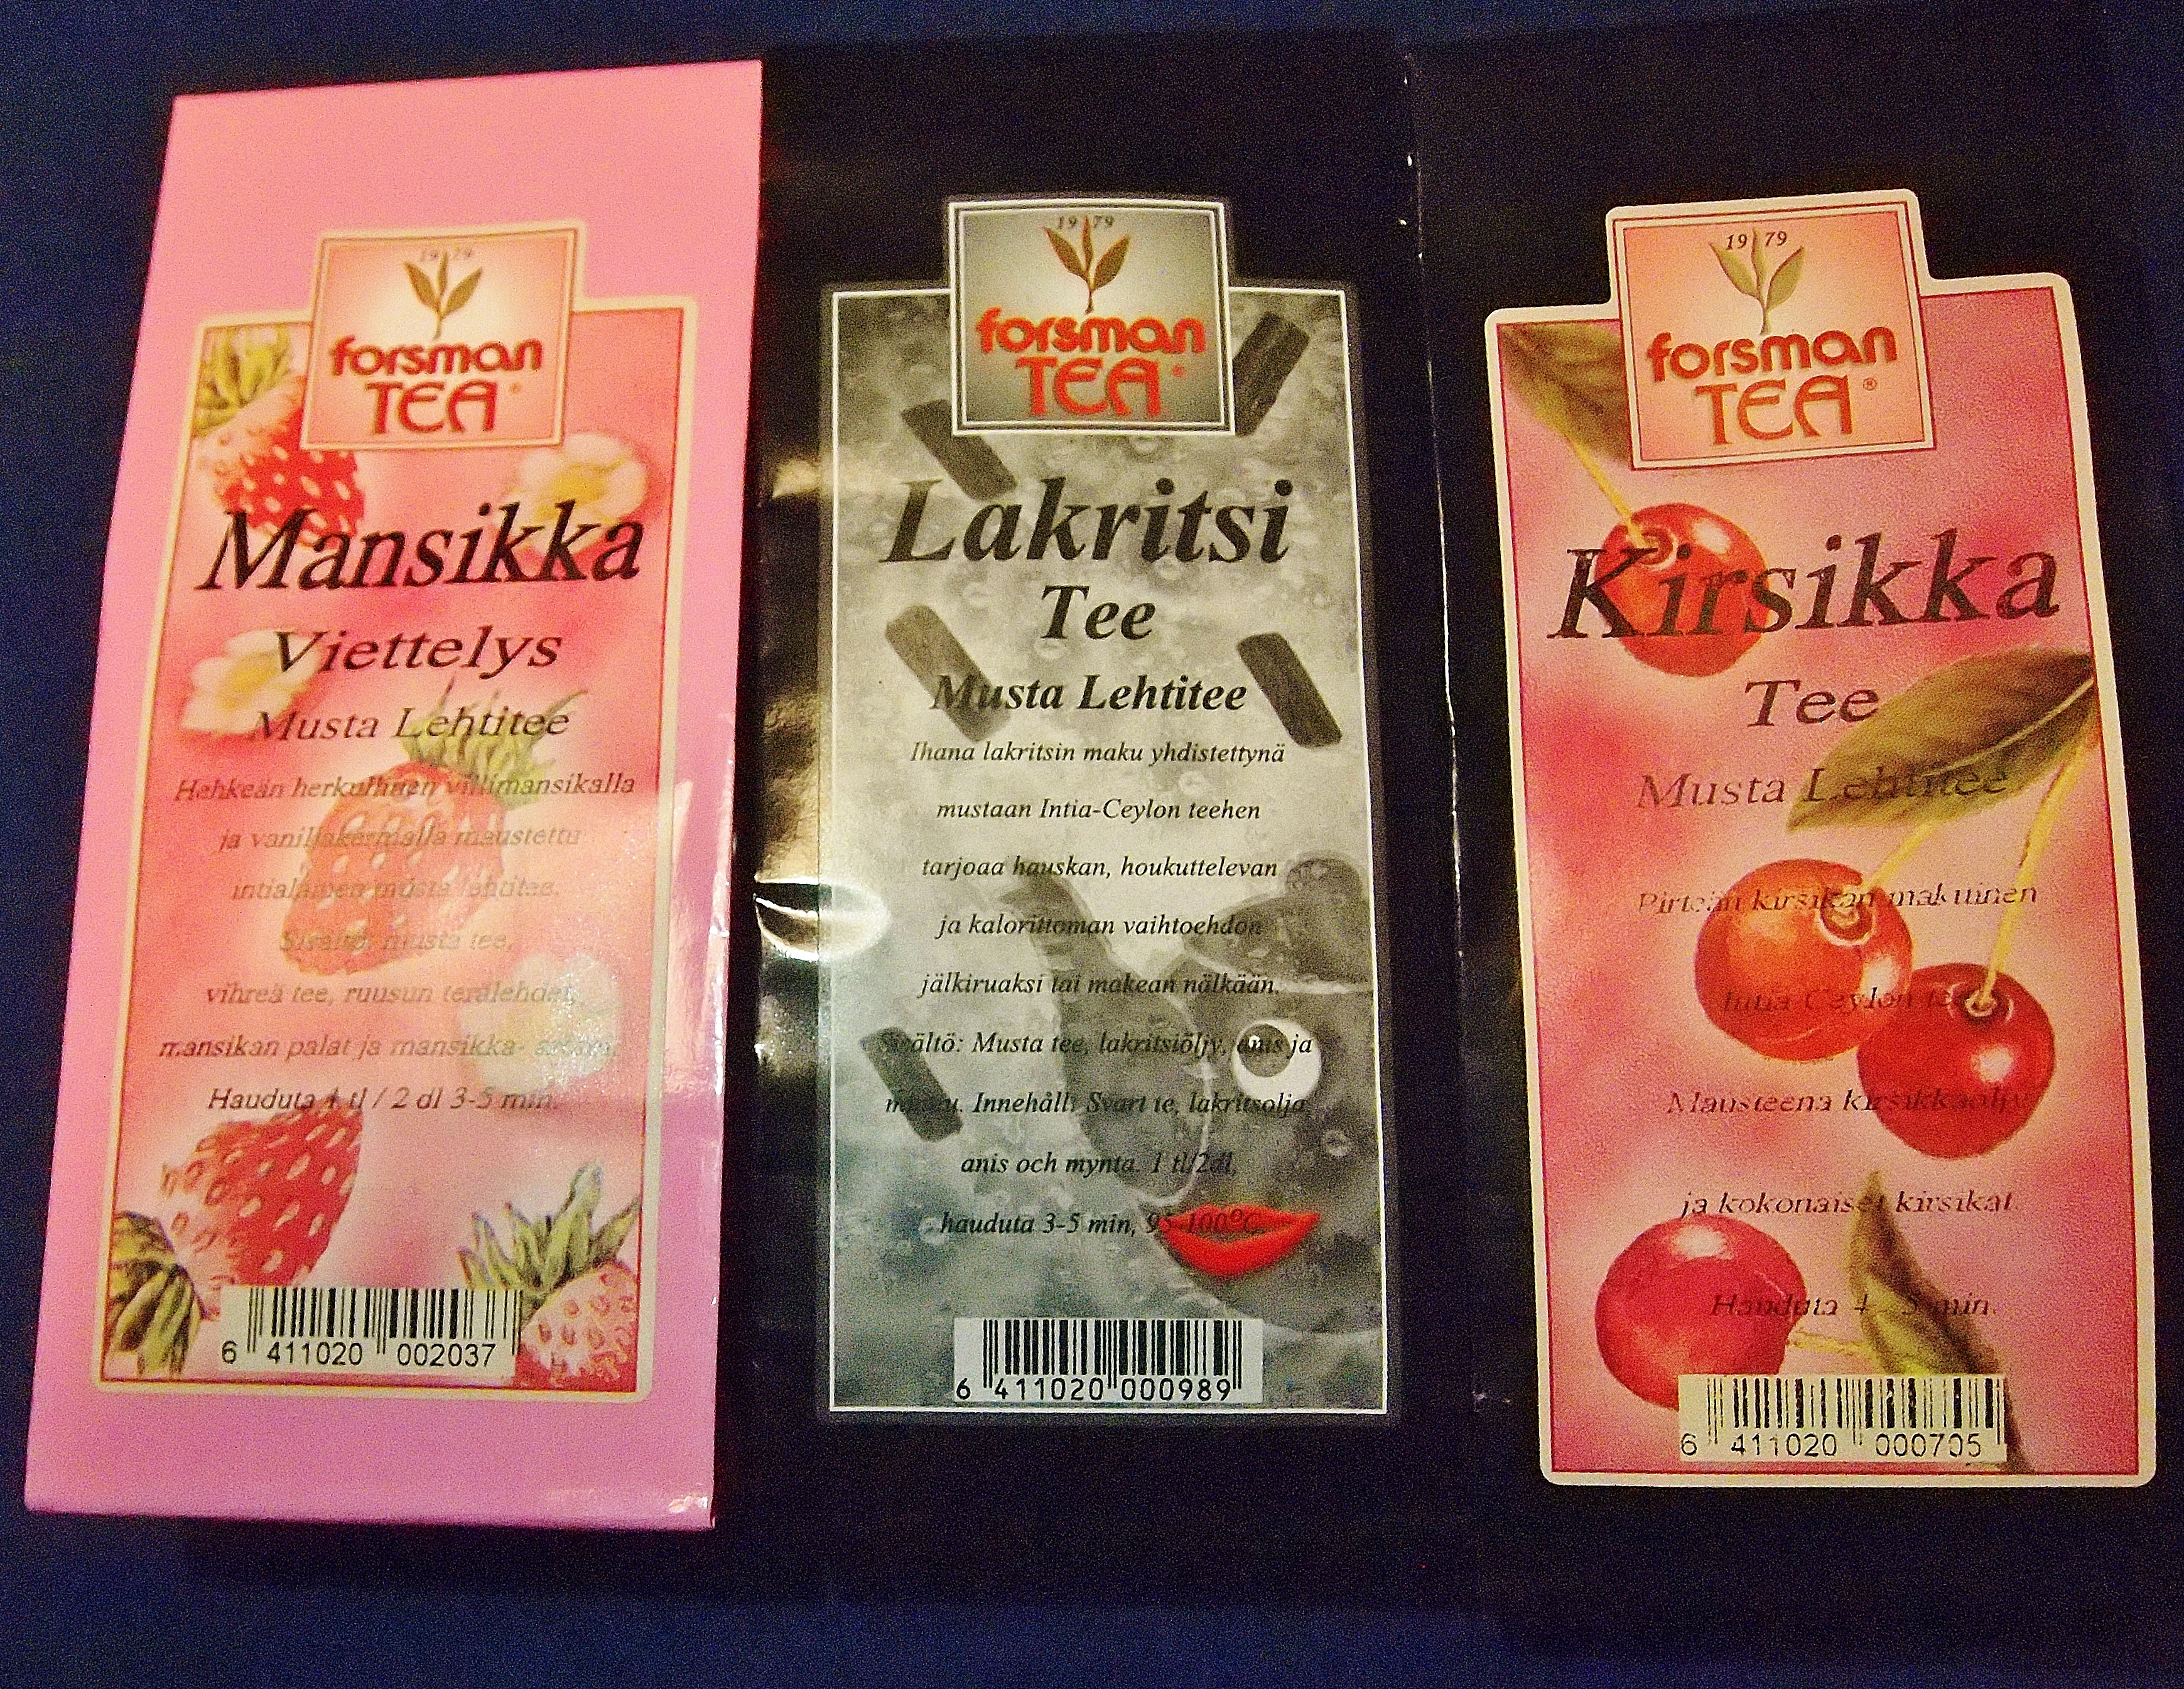 Forsman Tea Kirsikka, Mansikka Viettelys, Lakritsi